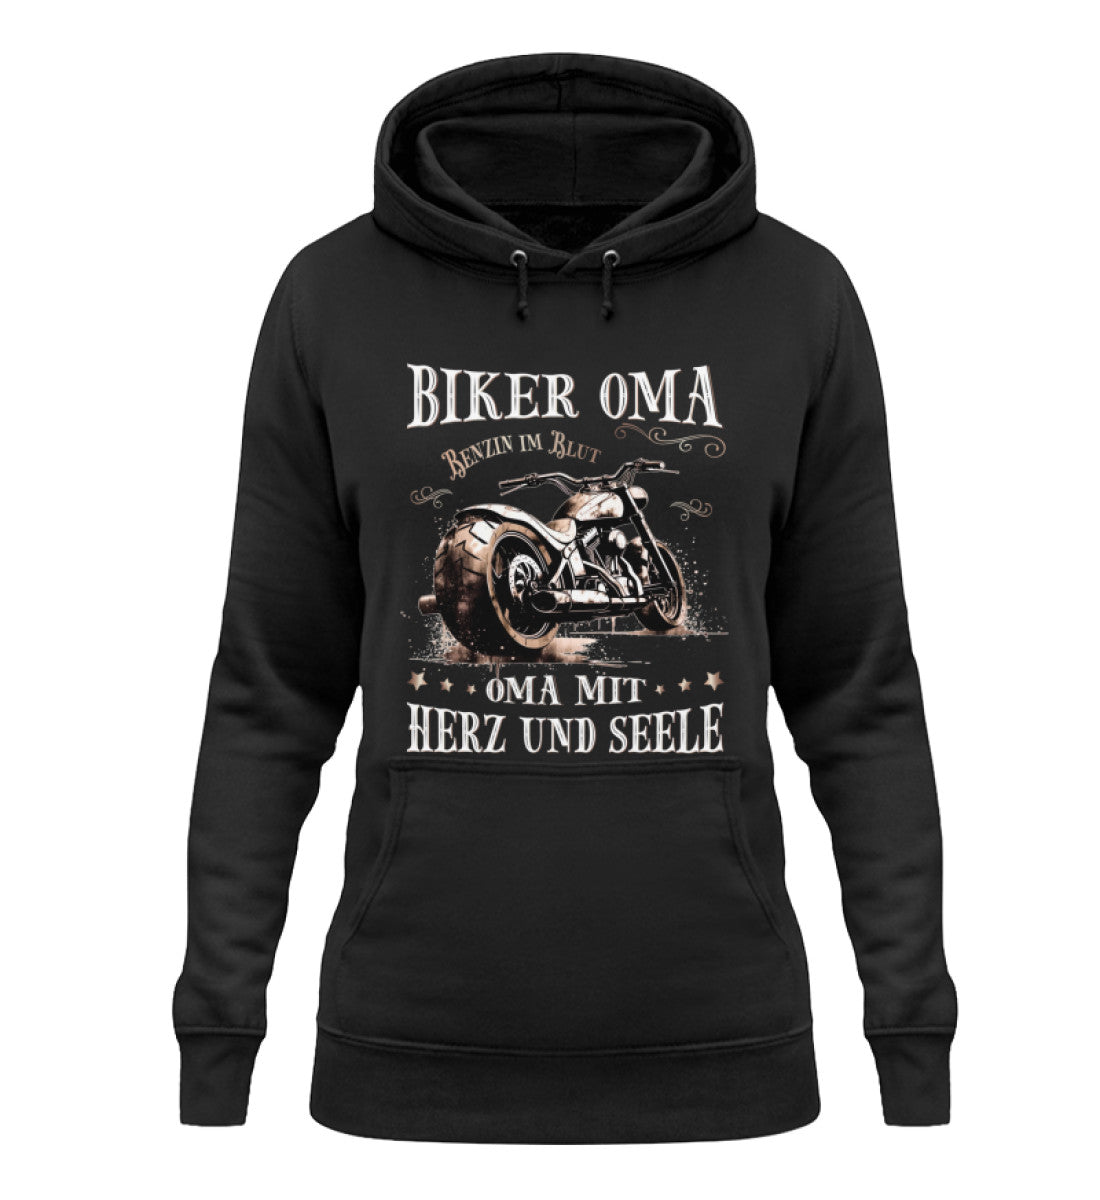 Ein Damen Hoodie für Motorradfahrerinnen von Wingbikers mit dem Aufdruck, Biker Oma - Benzin im Blut - Oma mit Herz und Seele, in schwarz.